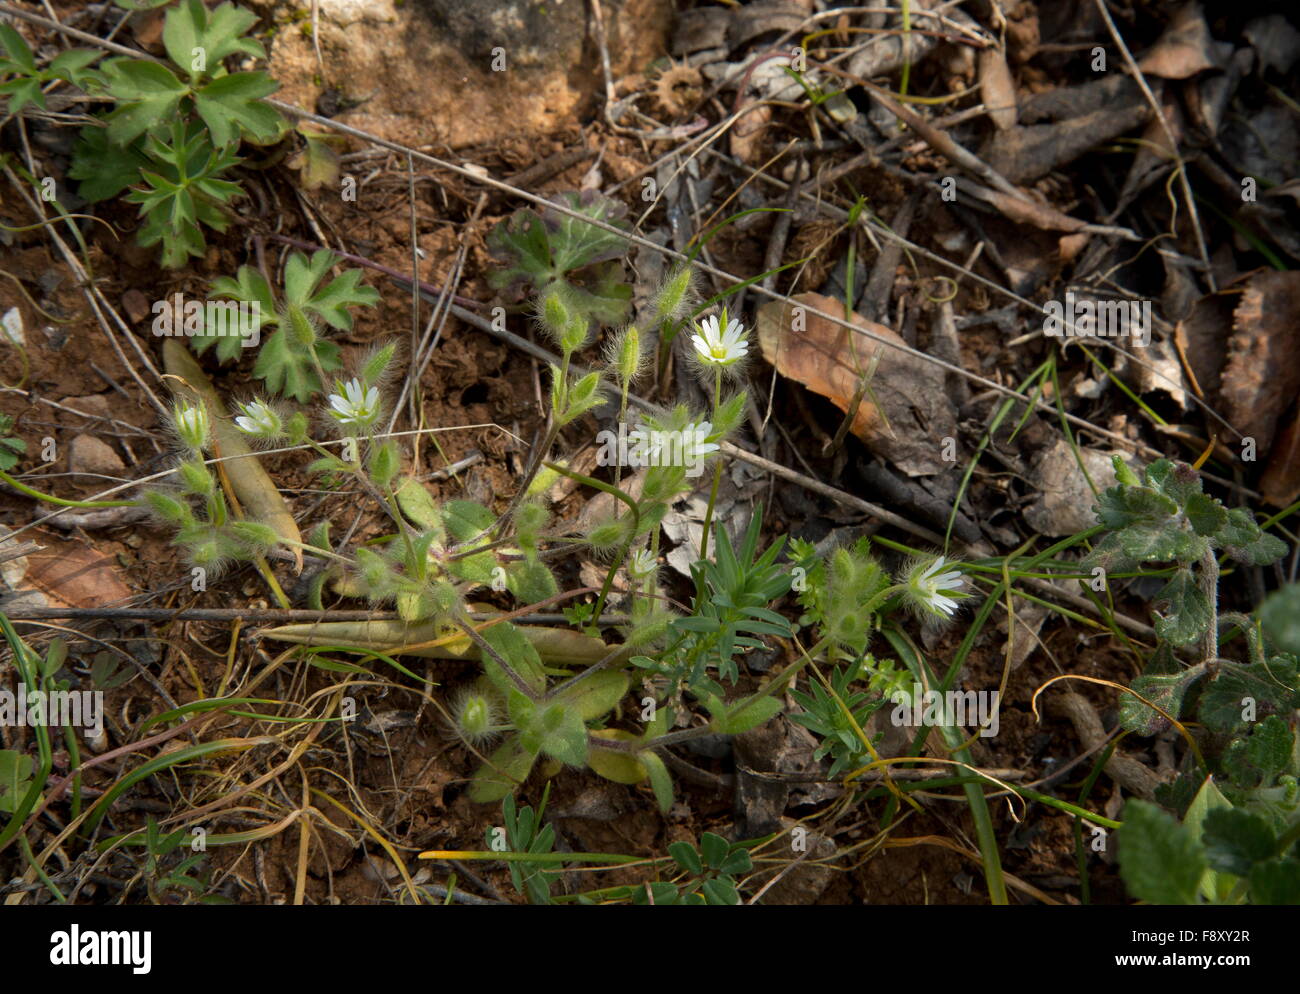 A chickweed, Cerastium comatum, Cerastium illyricum subsp. comatum, Lesvos, Greece Stock Photo